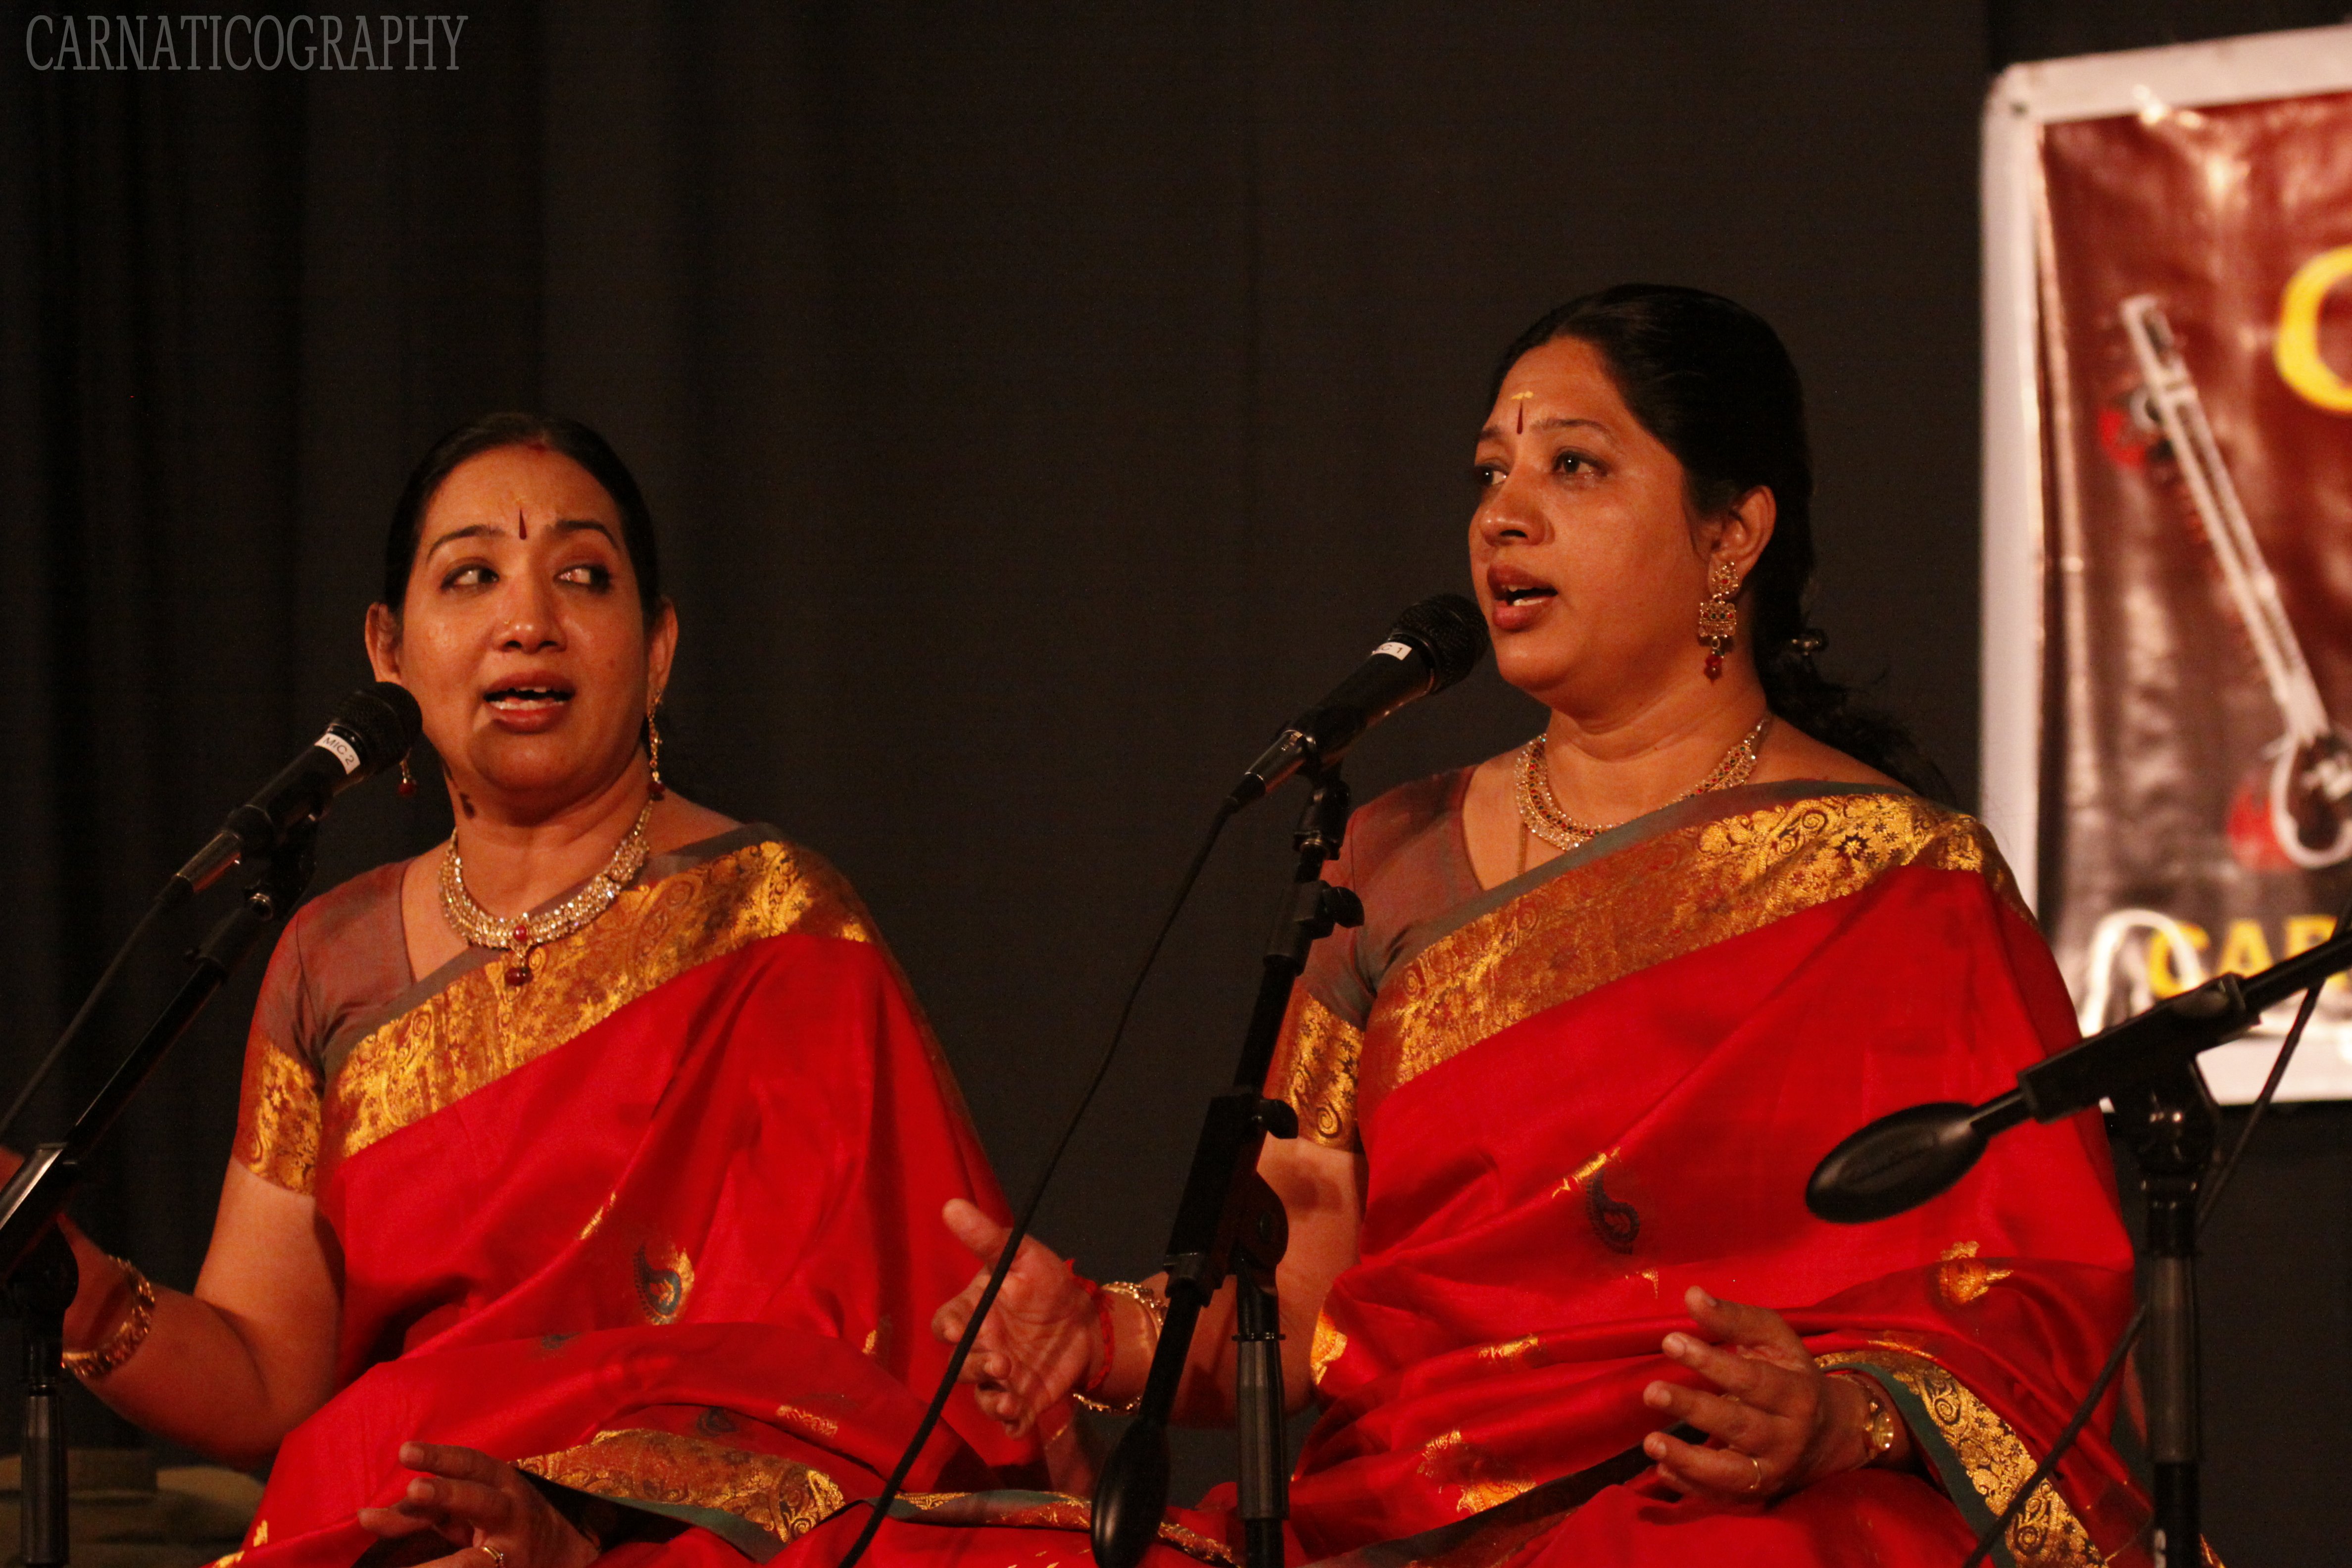 Mambalam Sisters Concert